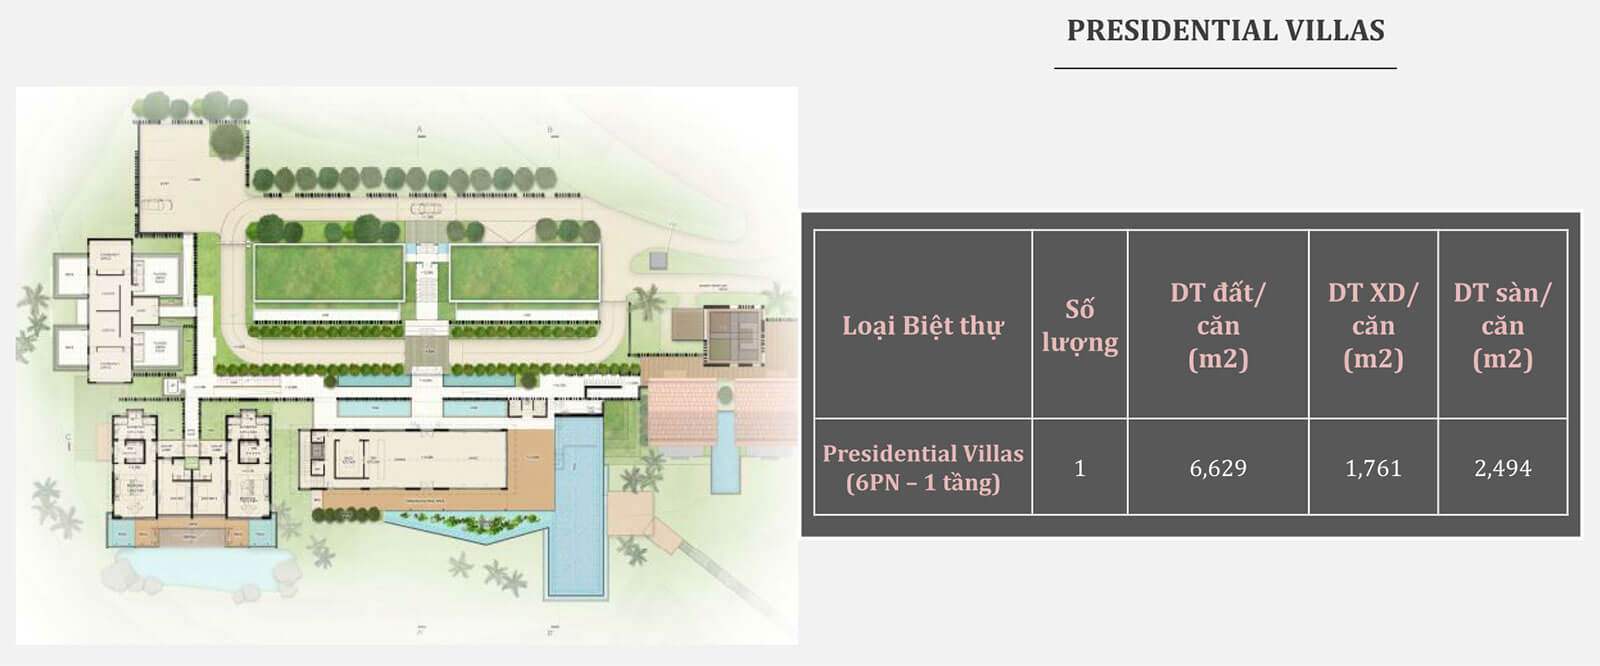 Presidential Villas Park Hyatt Phu Quoc